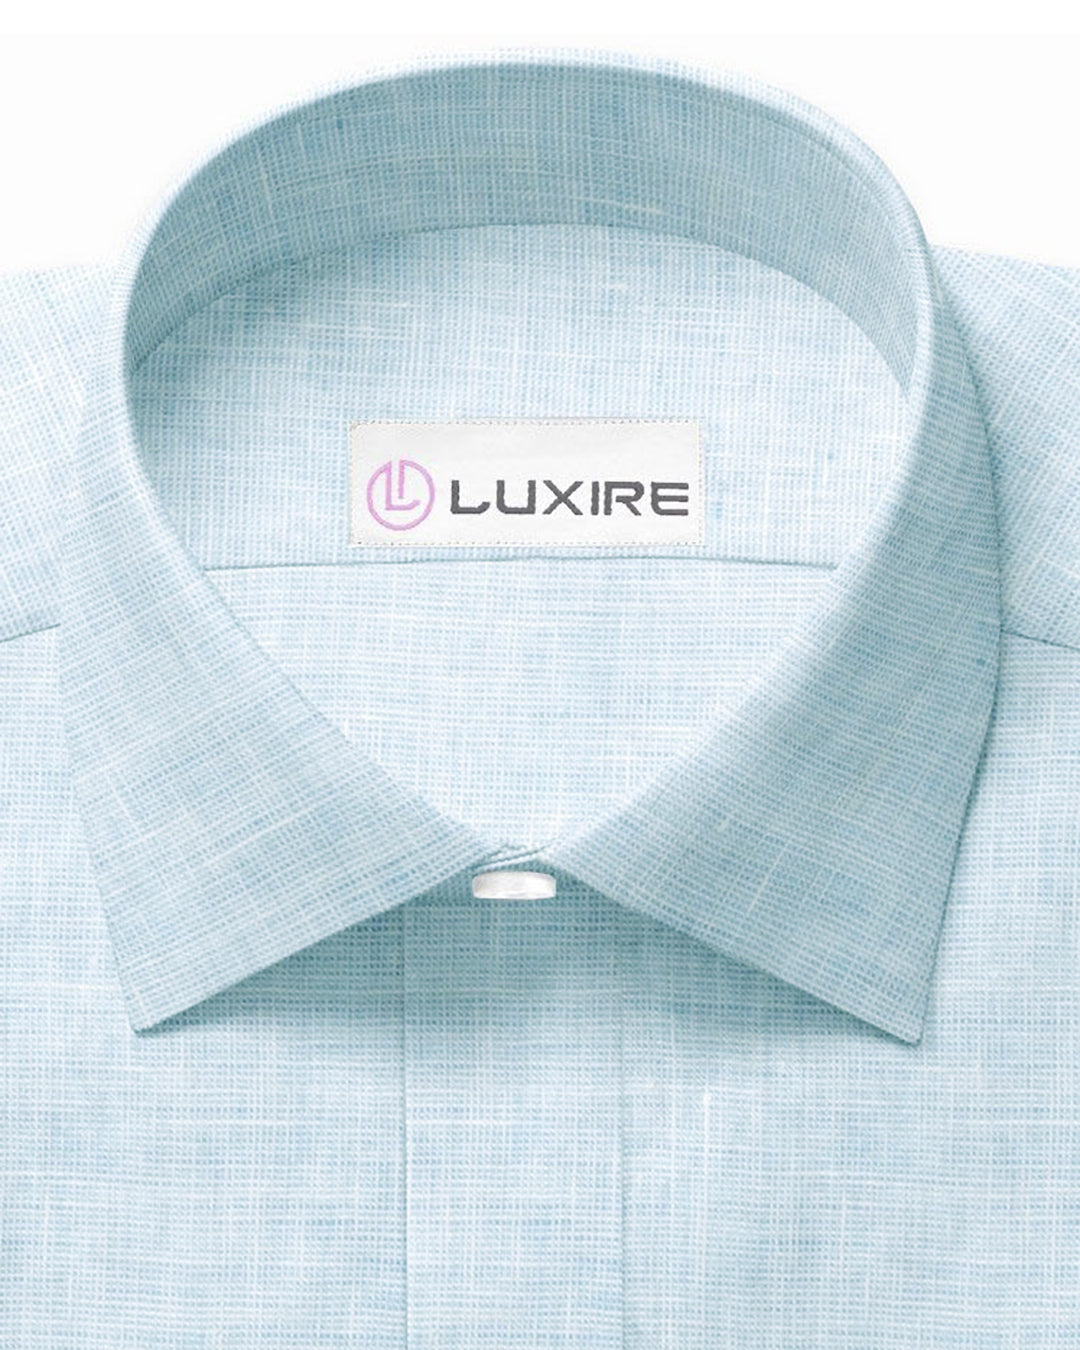 Collar of custom linen shirt for men in pale blue